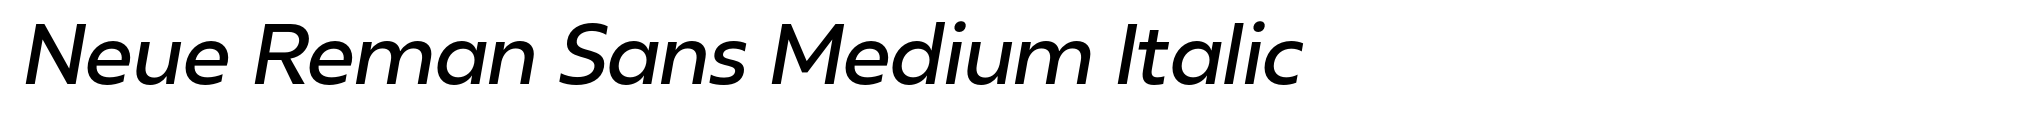 Neue Reman Sans Medium Italic image